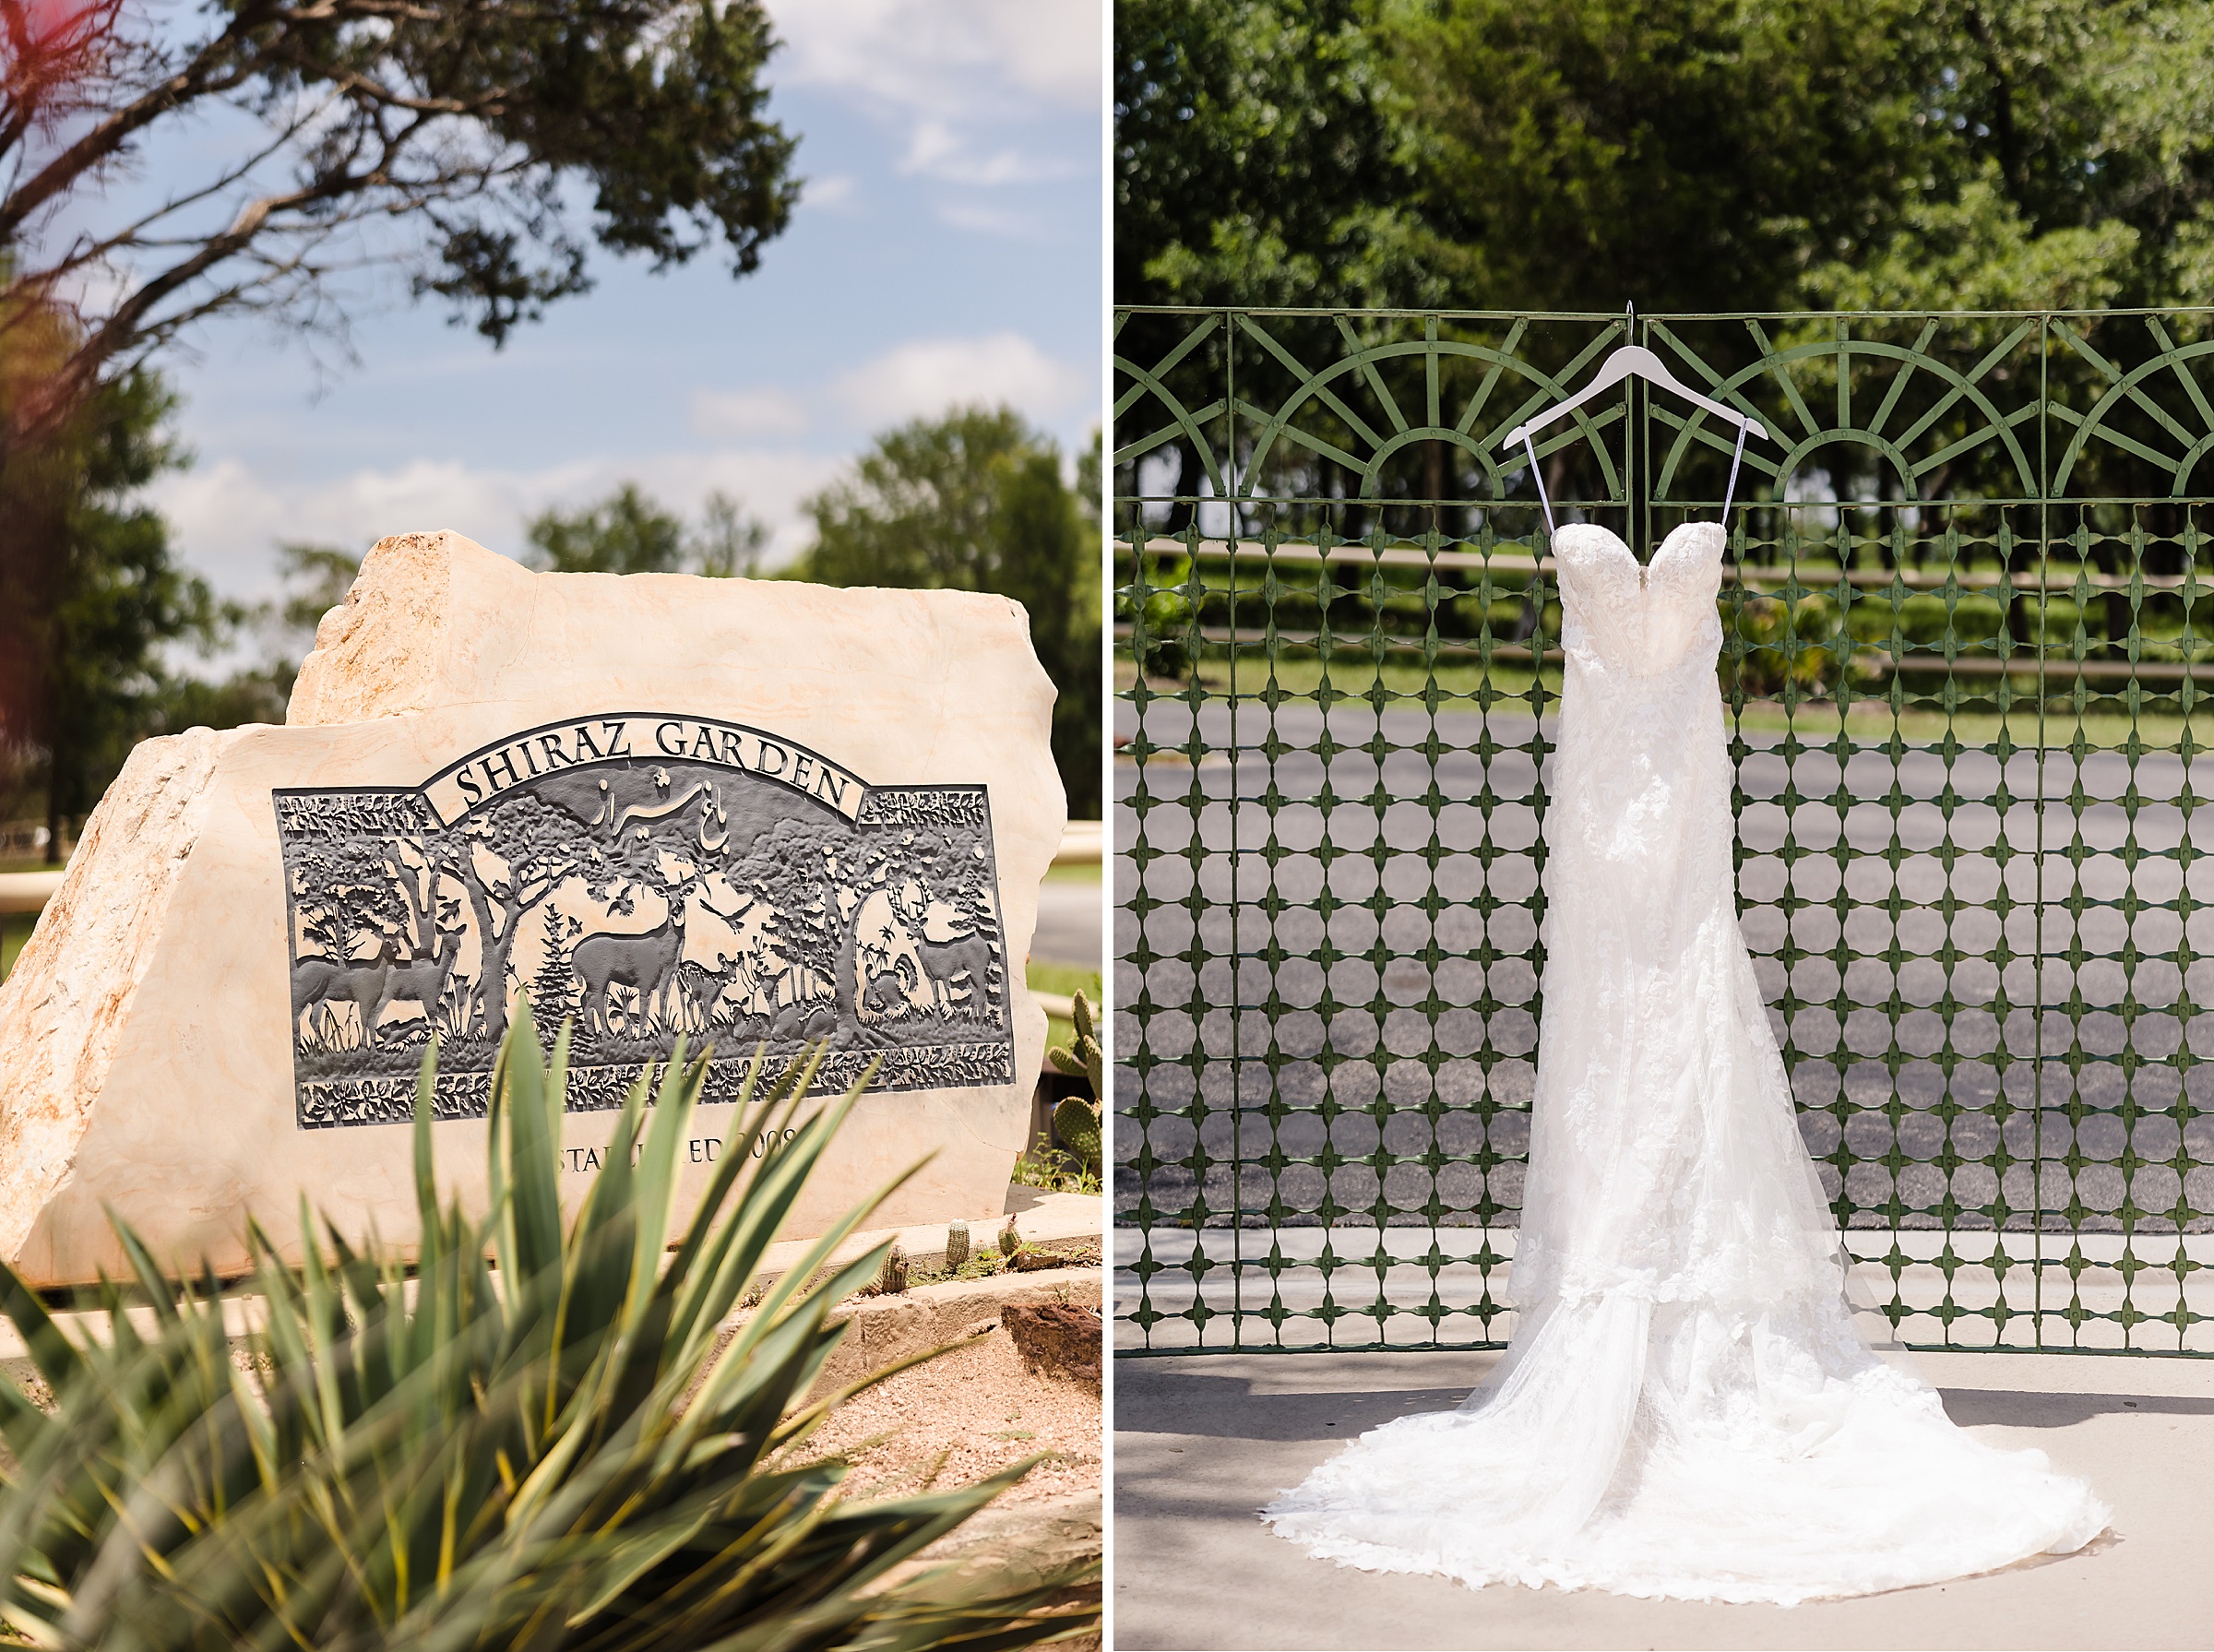 The front sign and wedding dress the Shiraz Garden Wedding Venue in Bastrop, Texas.